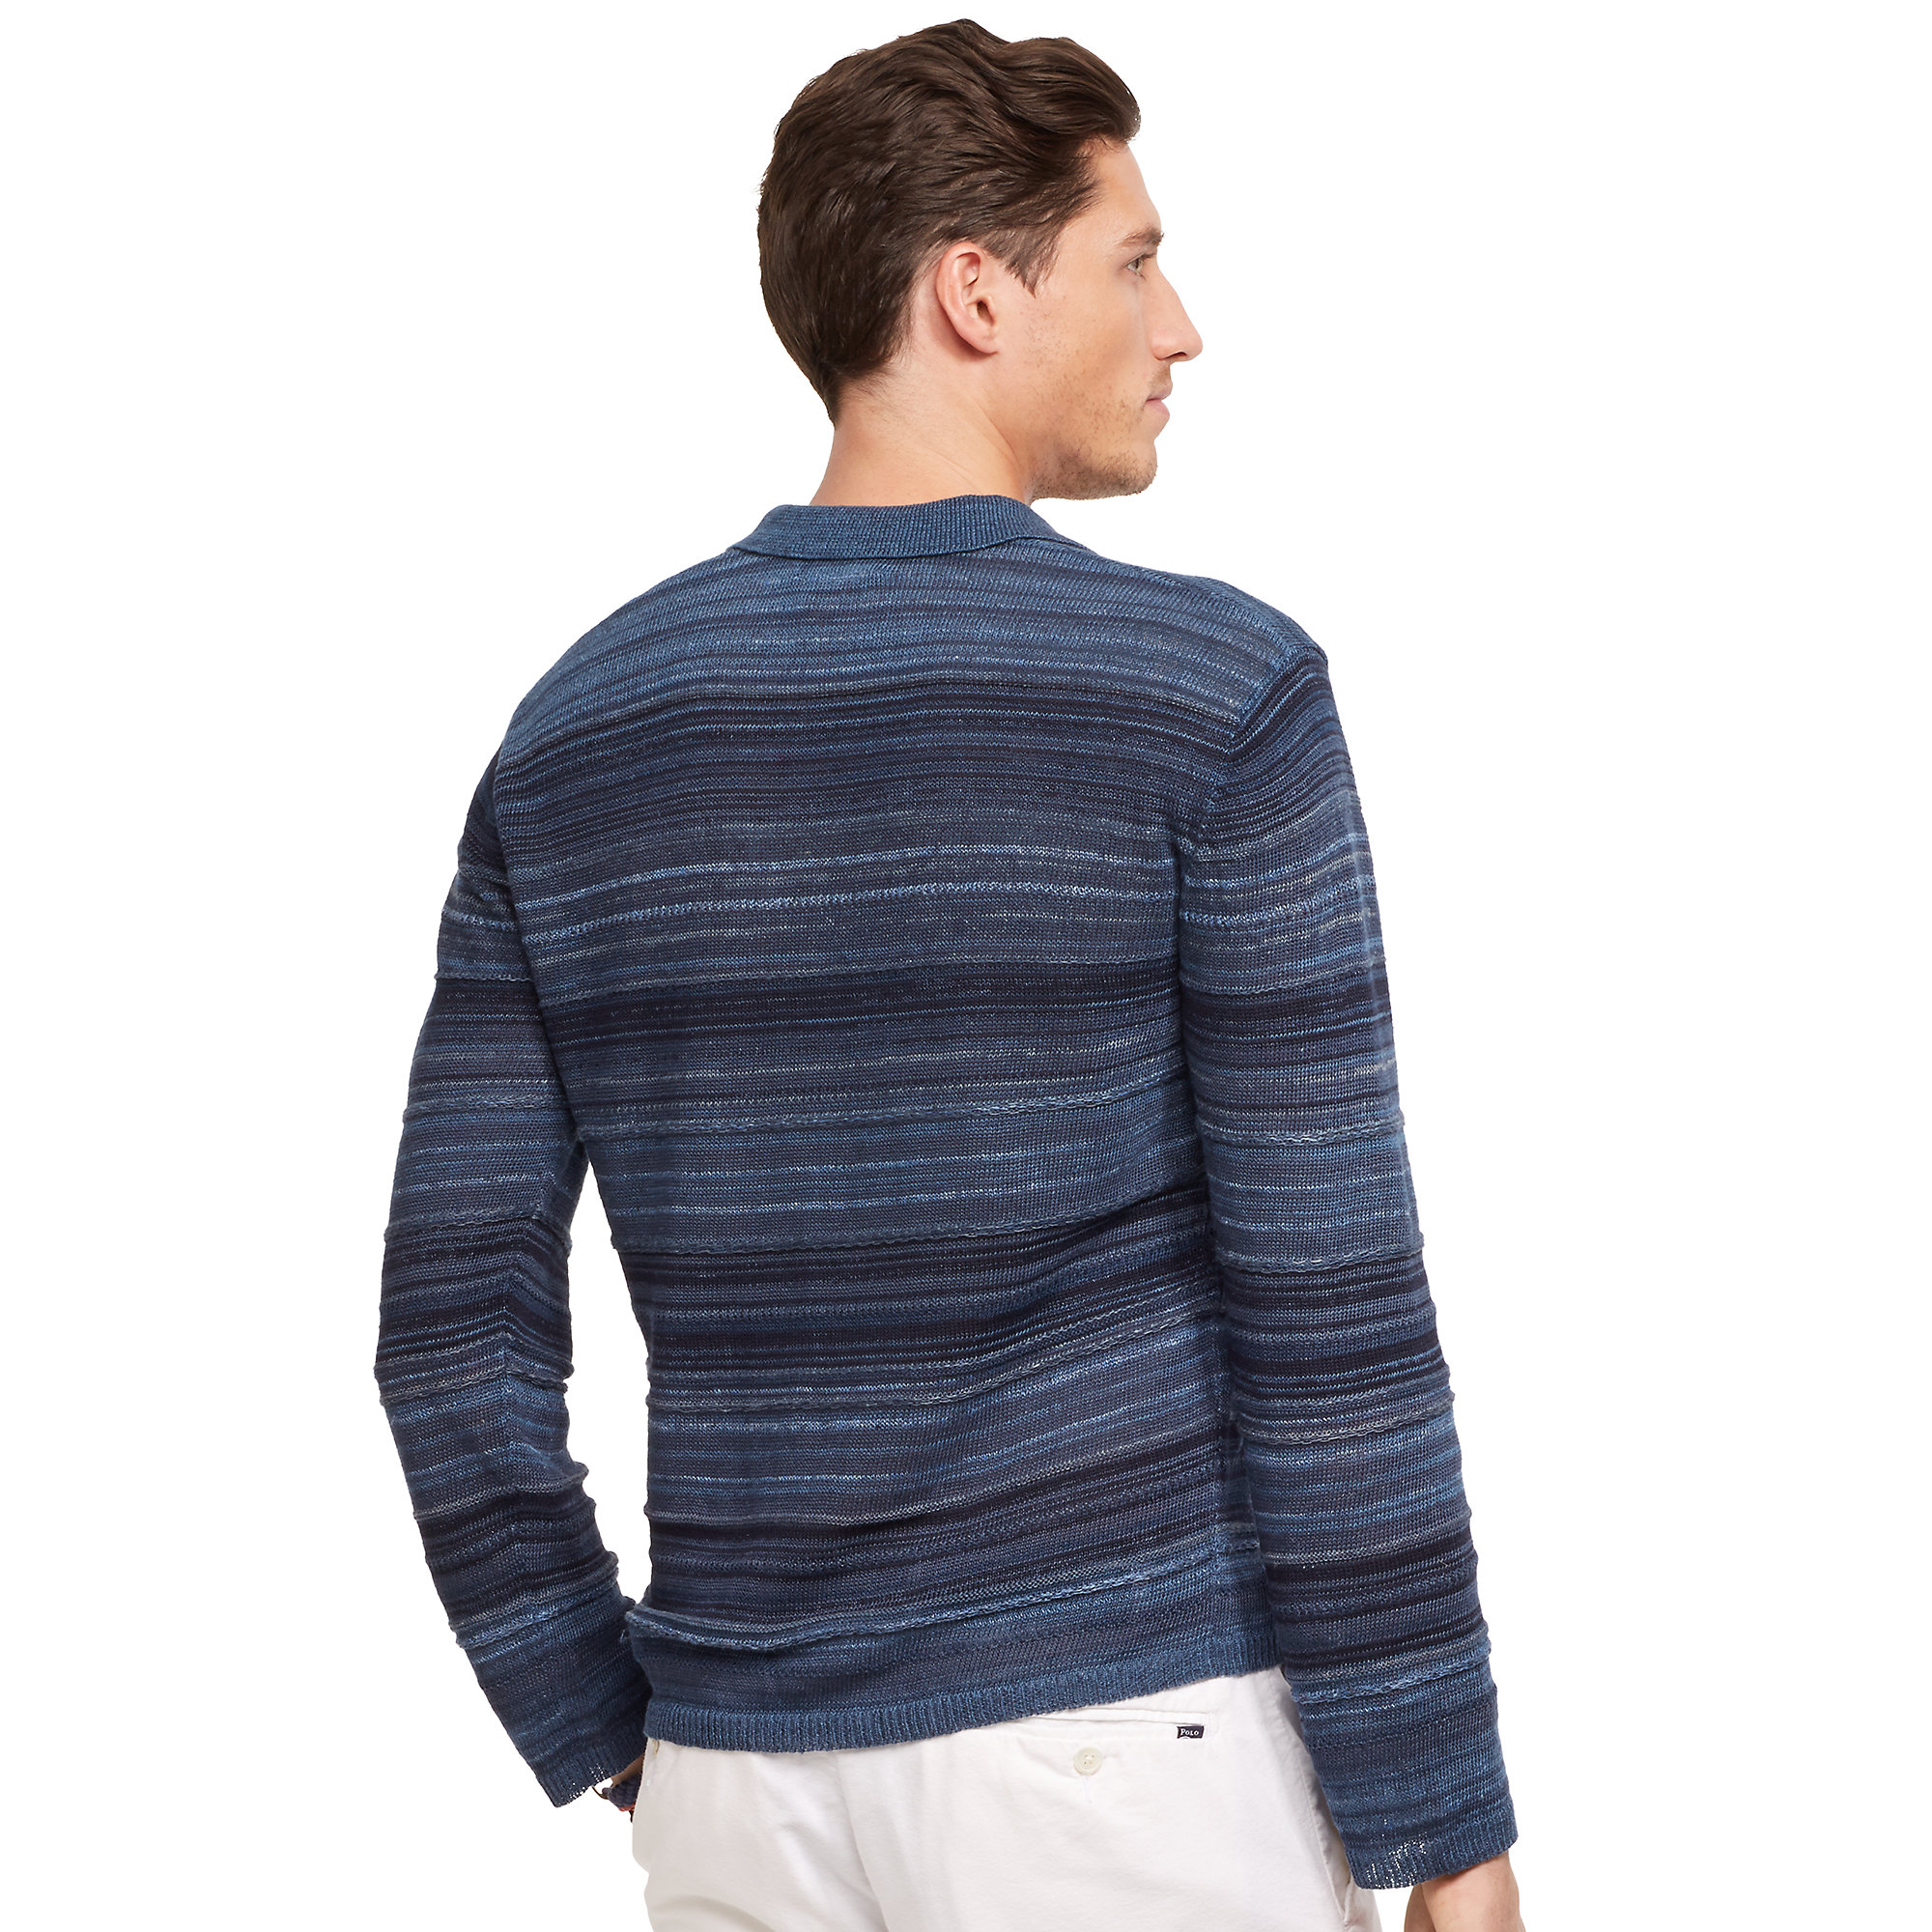  Polo  Ralph  Lauren  Linen Cotton Sweater  Polo  in Indigo 